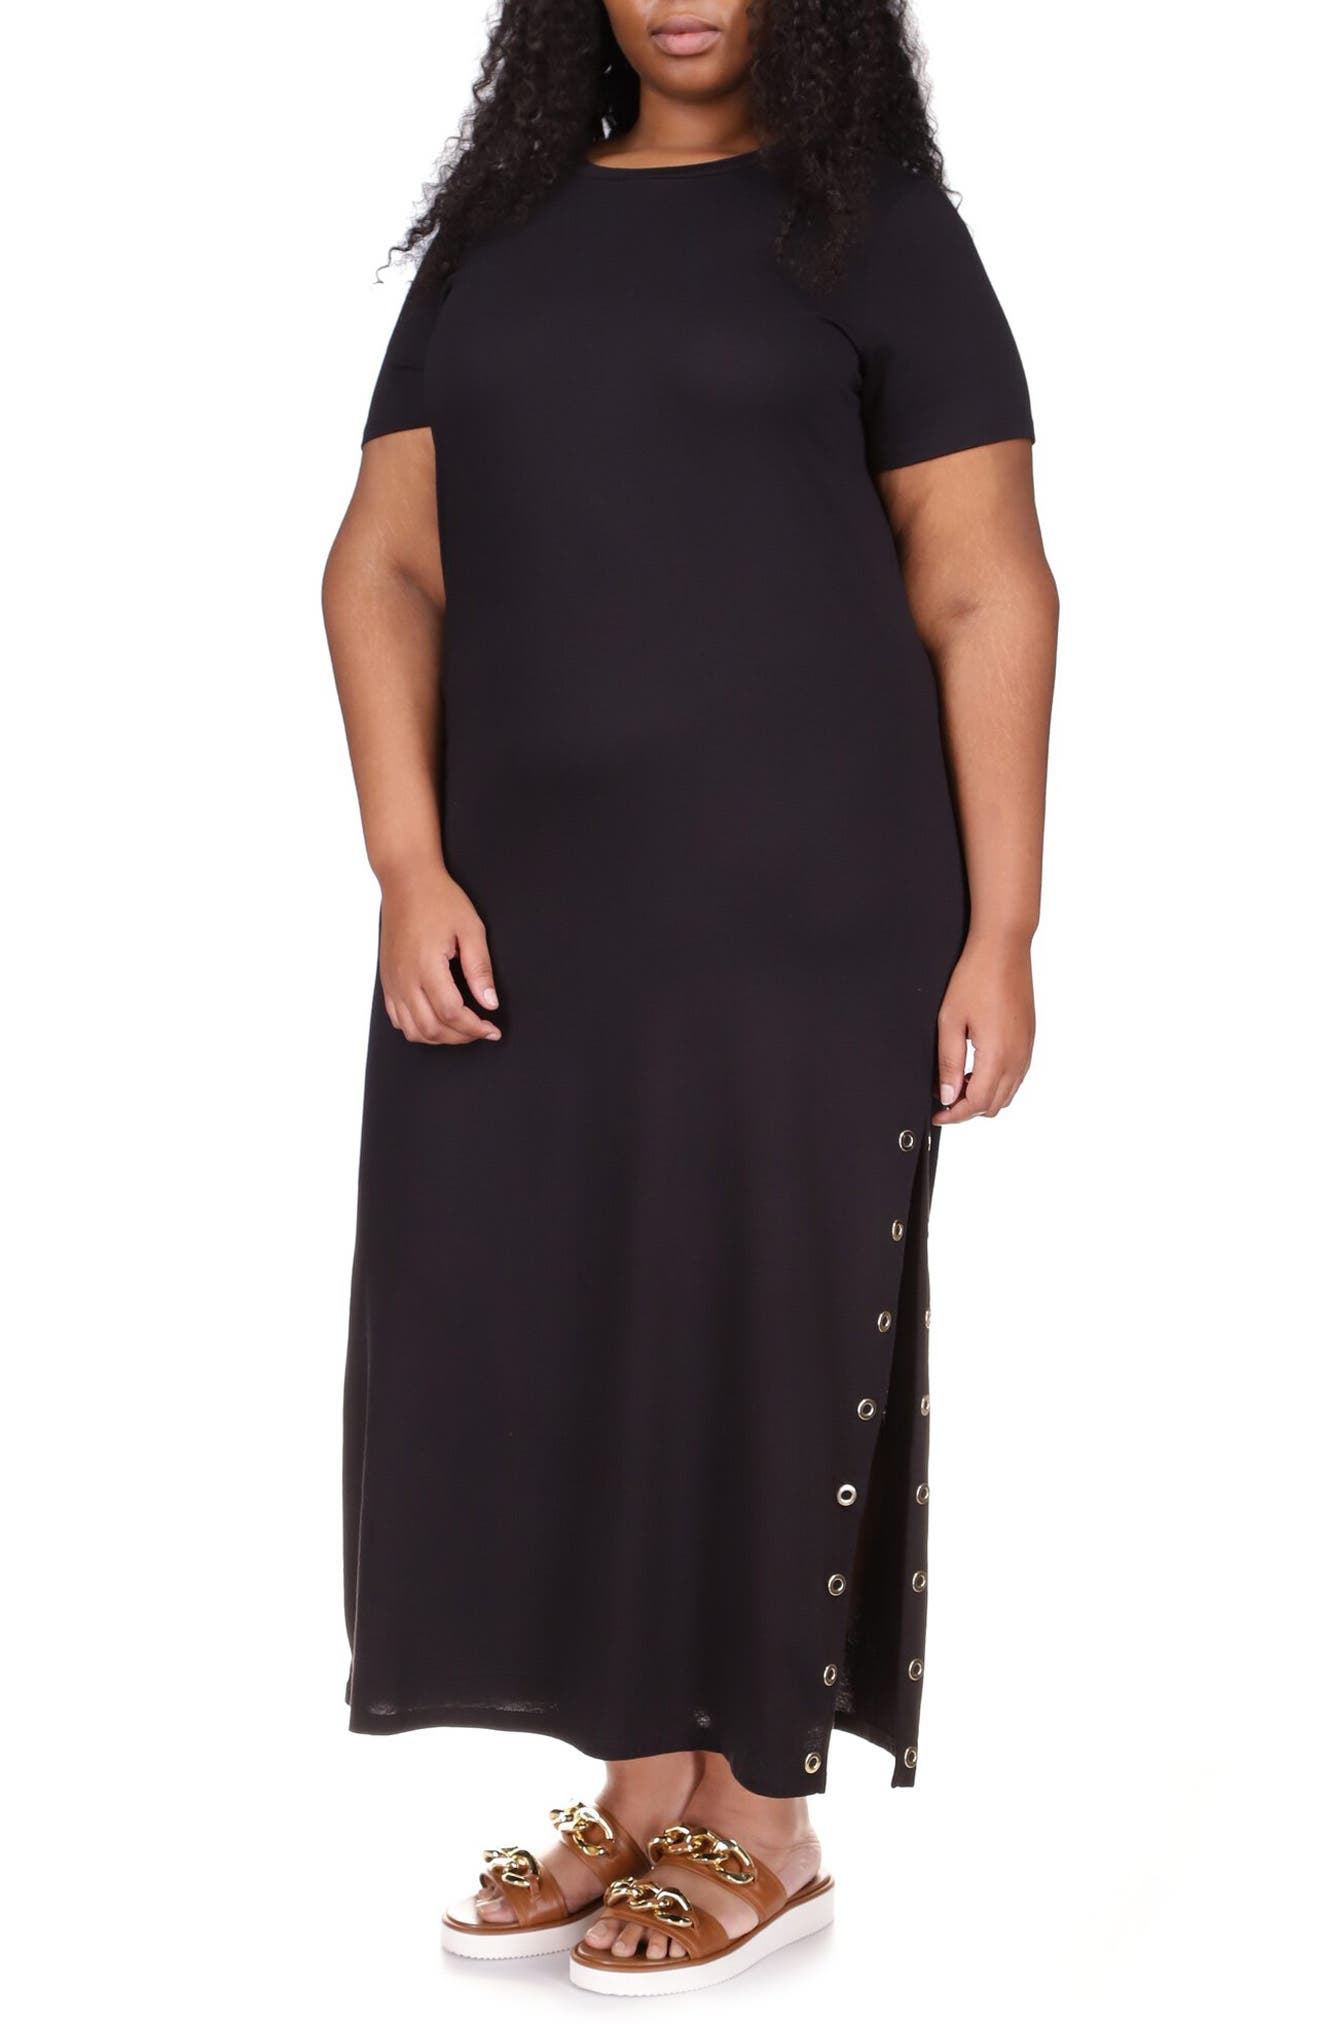 Michael Kors Grommet T-Shirt Dress in Black